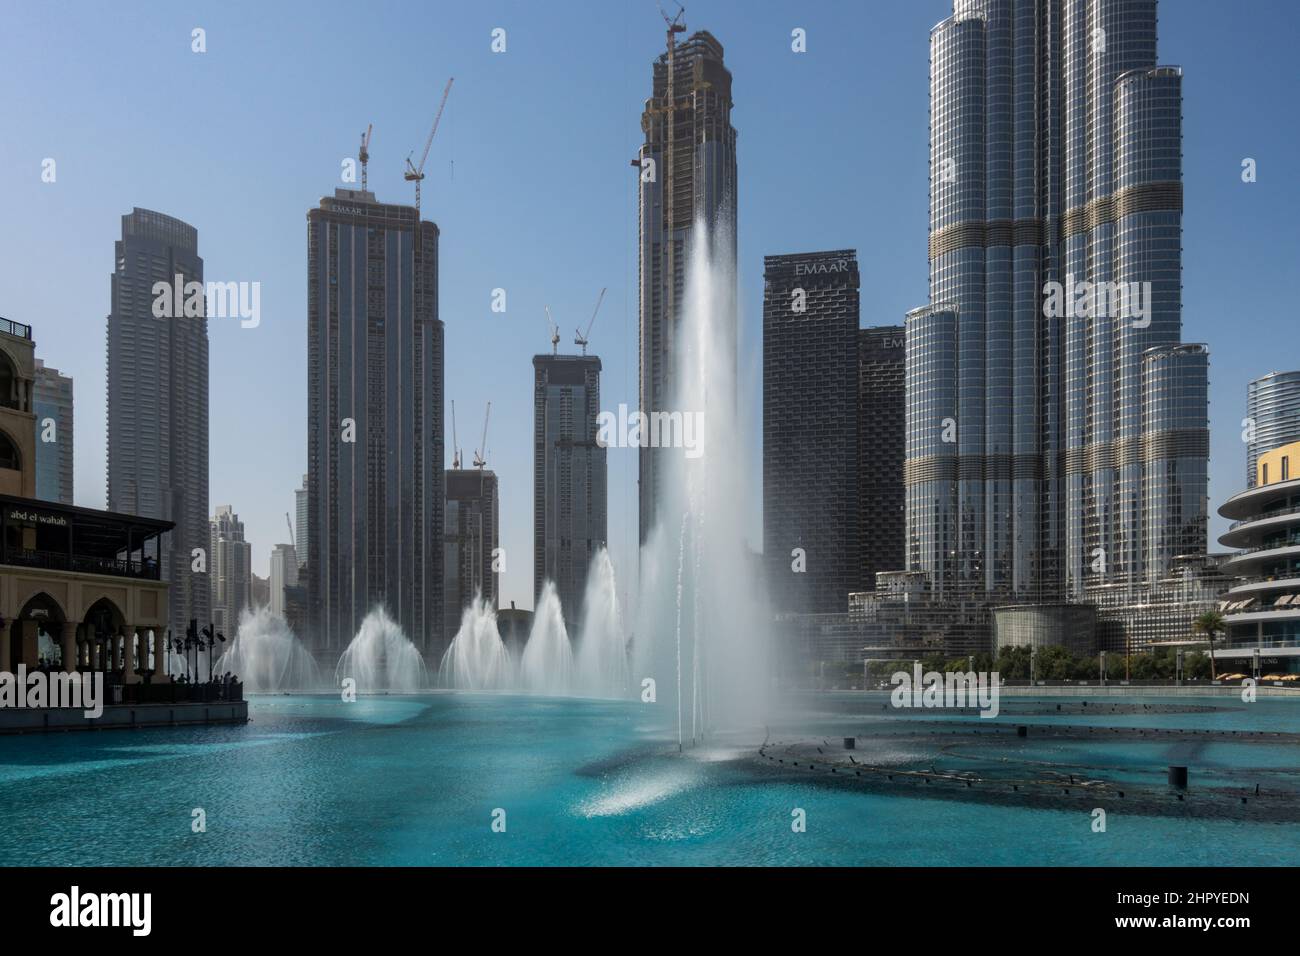 The famous Dubai Fountain near the Burj Khalifa and the Dubai Mall. Stock Photo